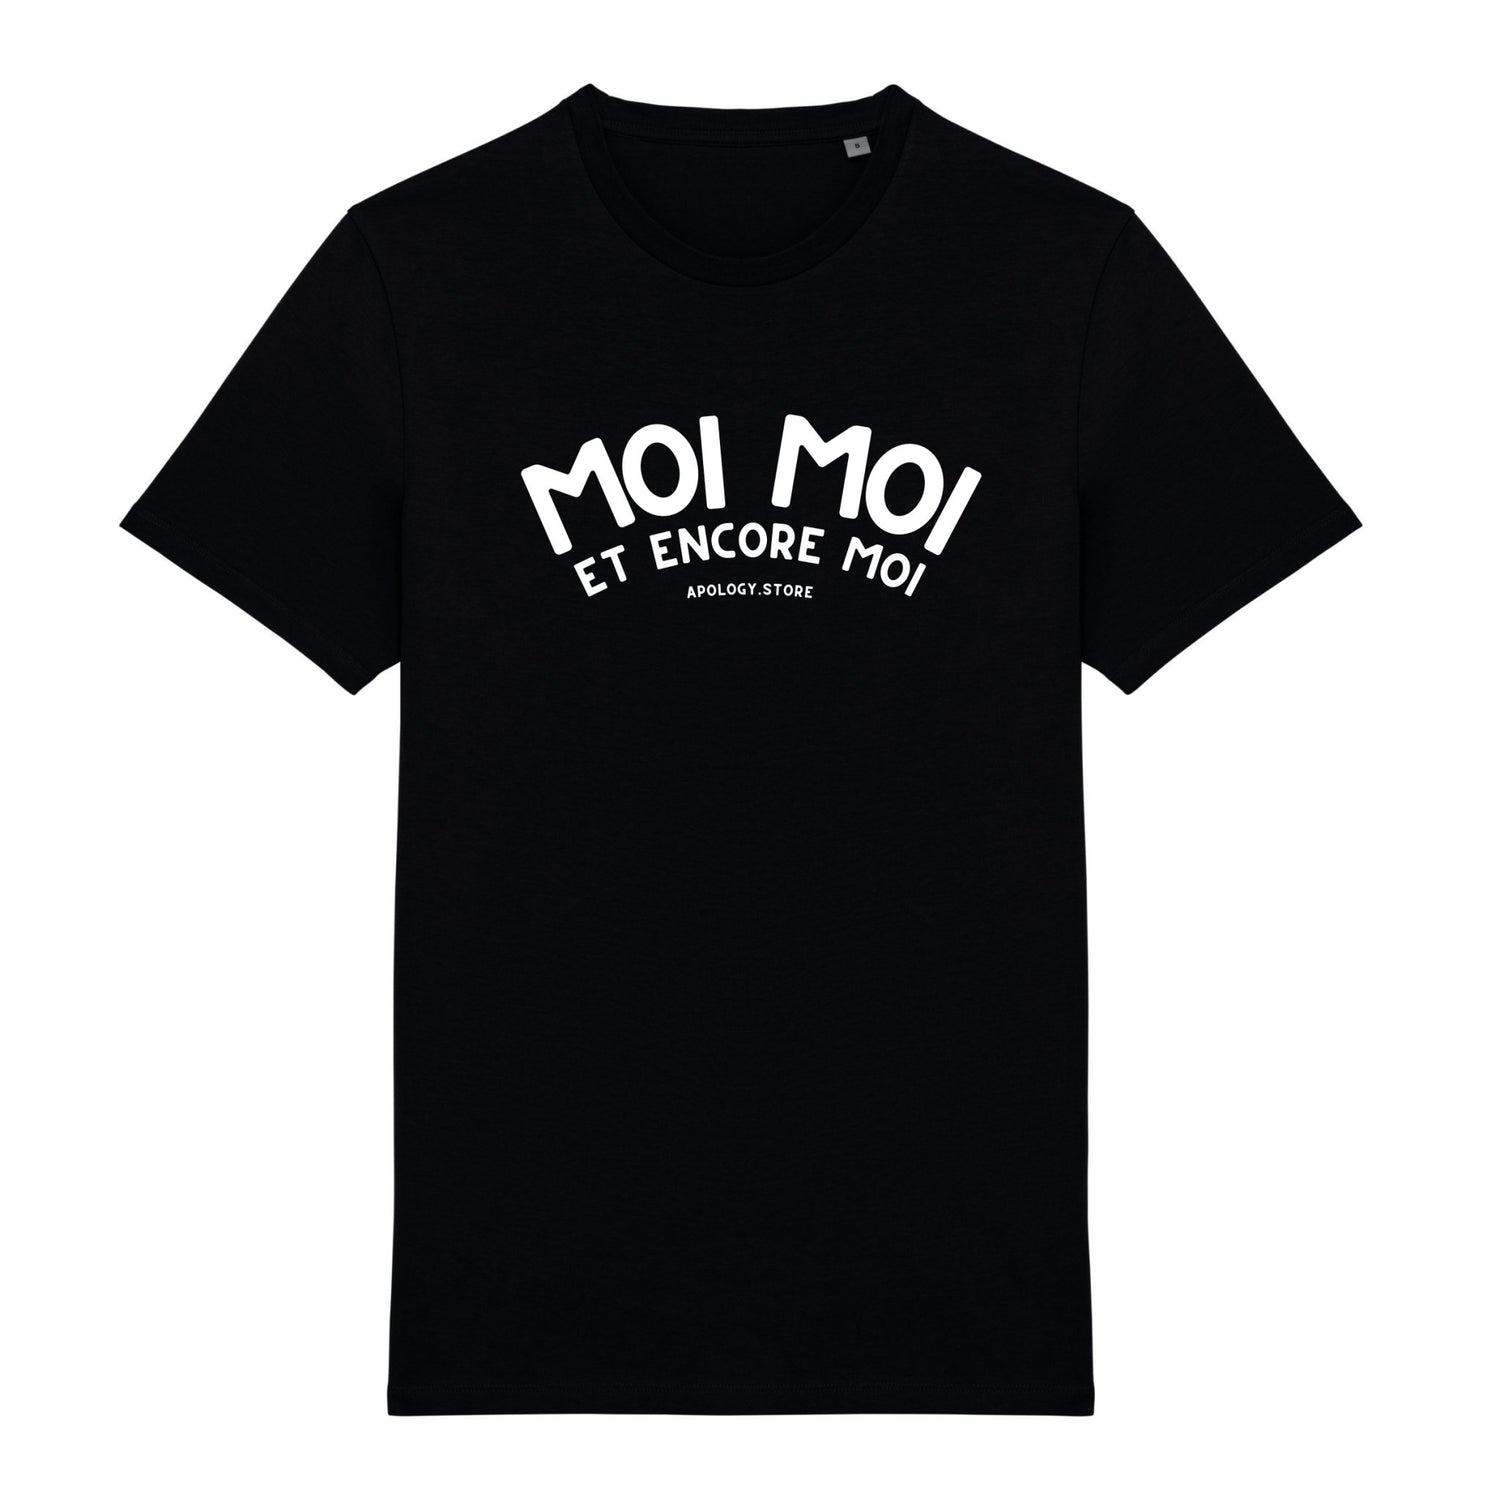 T-shirt Moi Moi et Encore Moi - Fabriqué au Portugal XS Noir - Imprimé en France